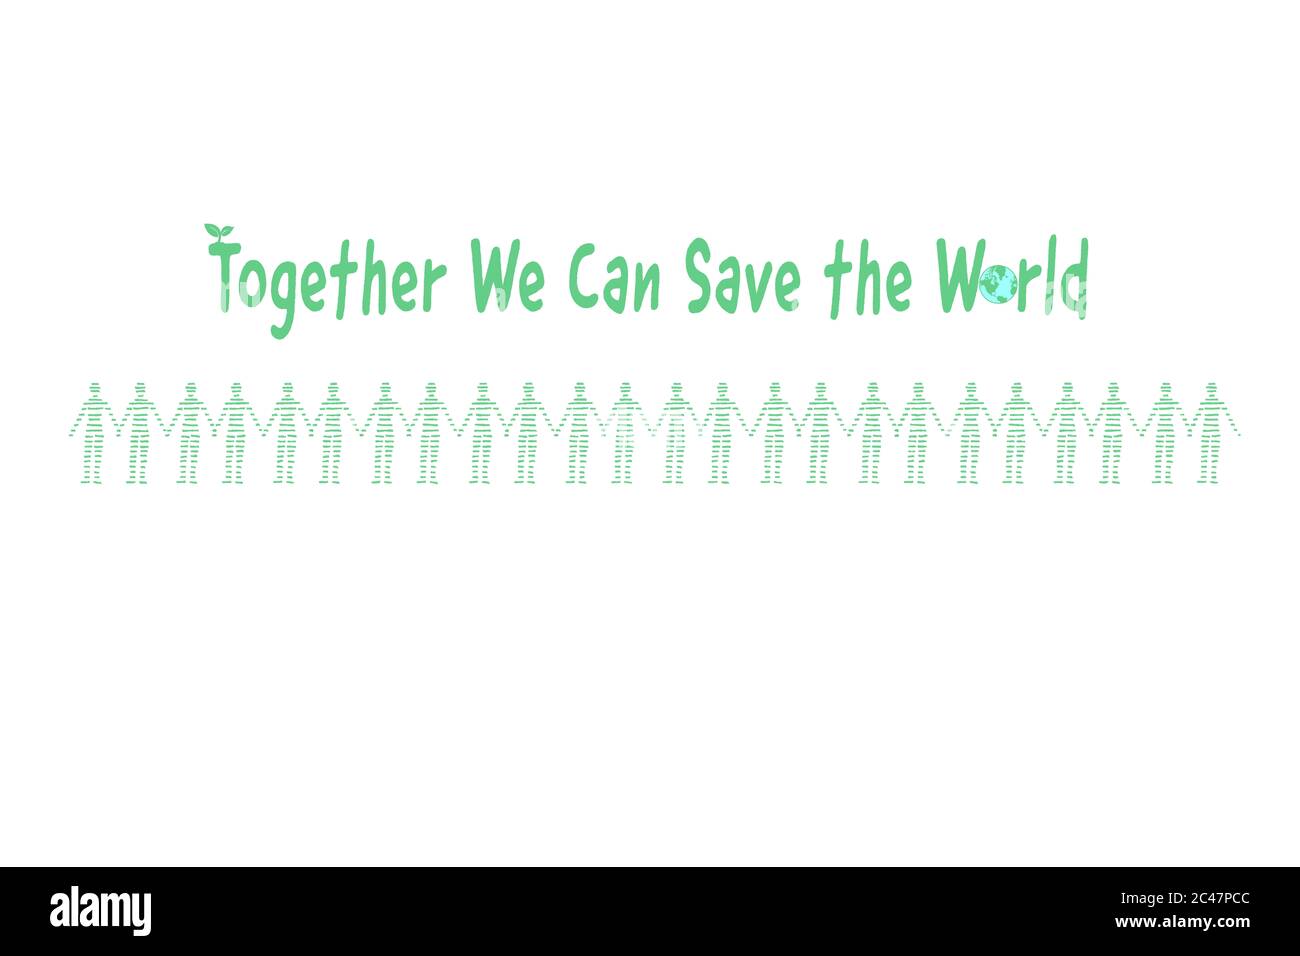 Ensemble, nous pouvons sauver le monde, l'activisme environnemental, la communauté se sont Unis main dans la main pour protester et travailler ensemble pour l'environnement et la planète, hum Banque D'Images